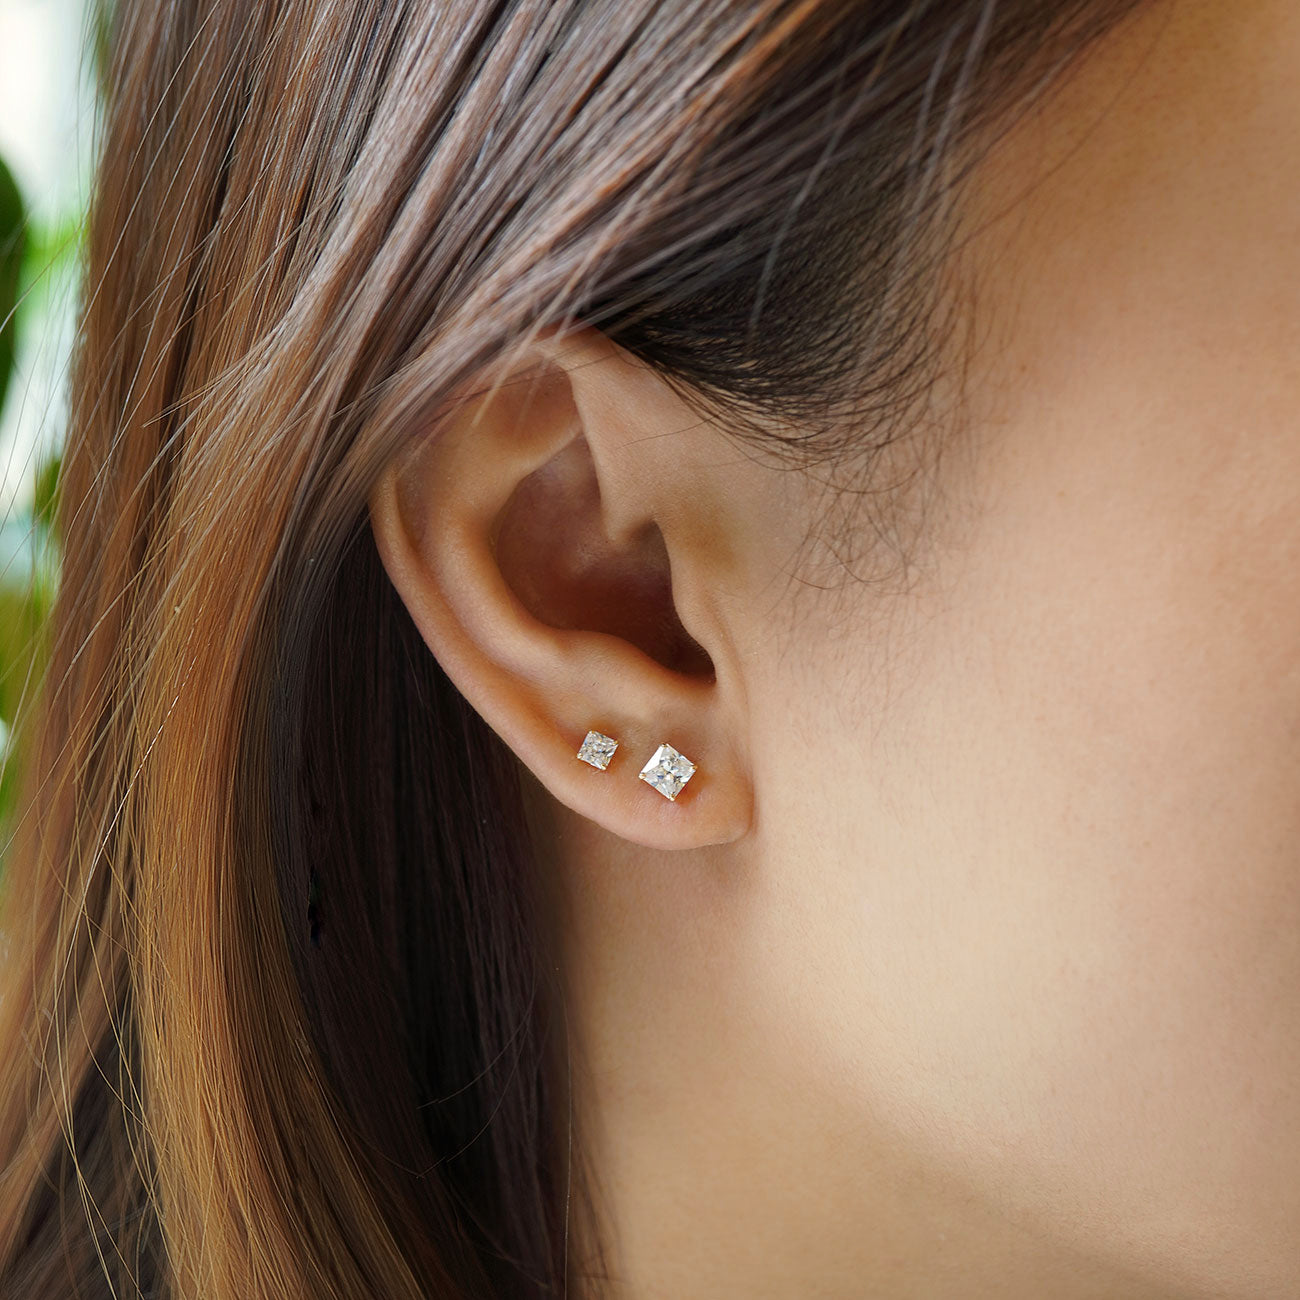 Minimalist Princess Cut Crystal Stud Earrings, 14K Gold Earrings 14K Gold / 5mm